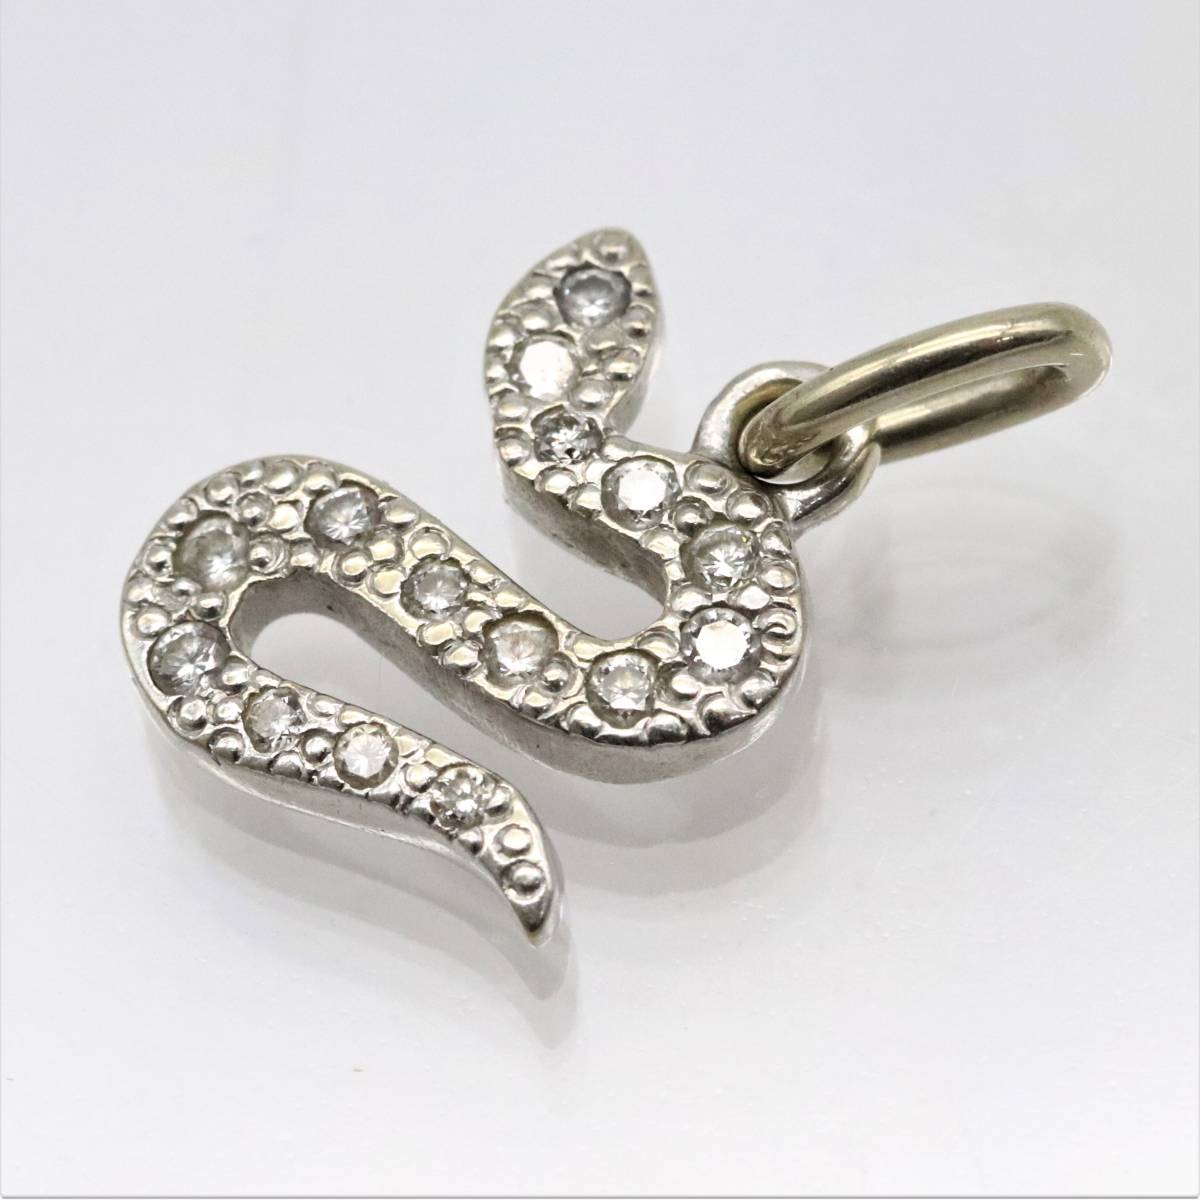  Pomellato dodoDODO K18WG 750 diamond Sune -k snake motif pendant top necklace charm white gold 